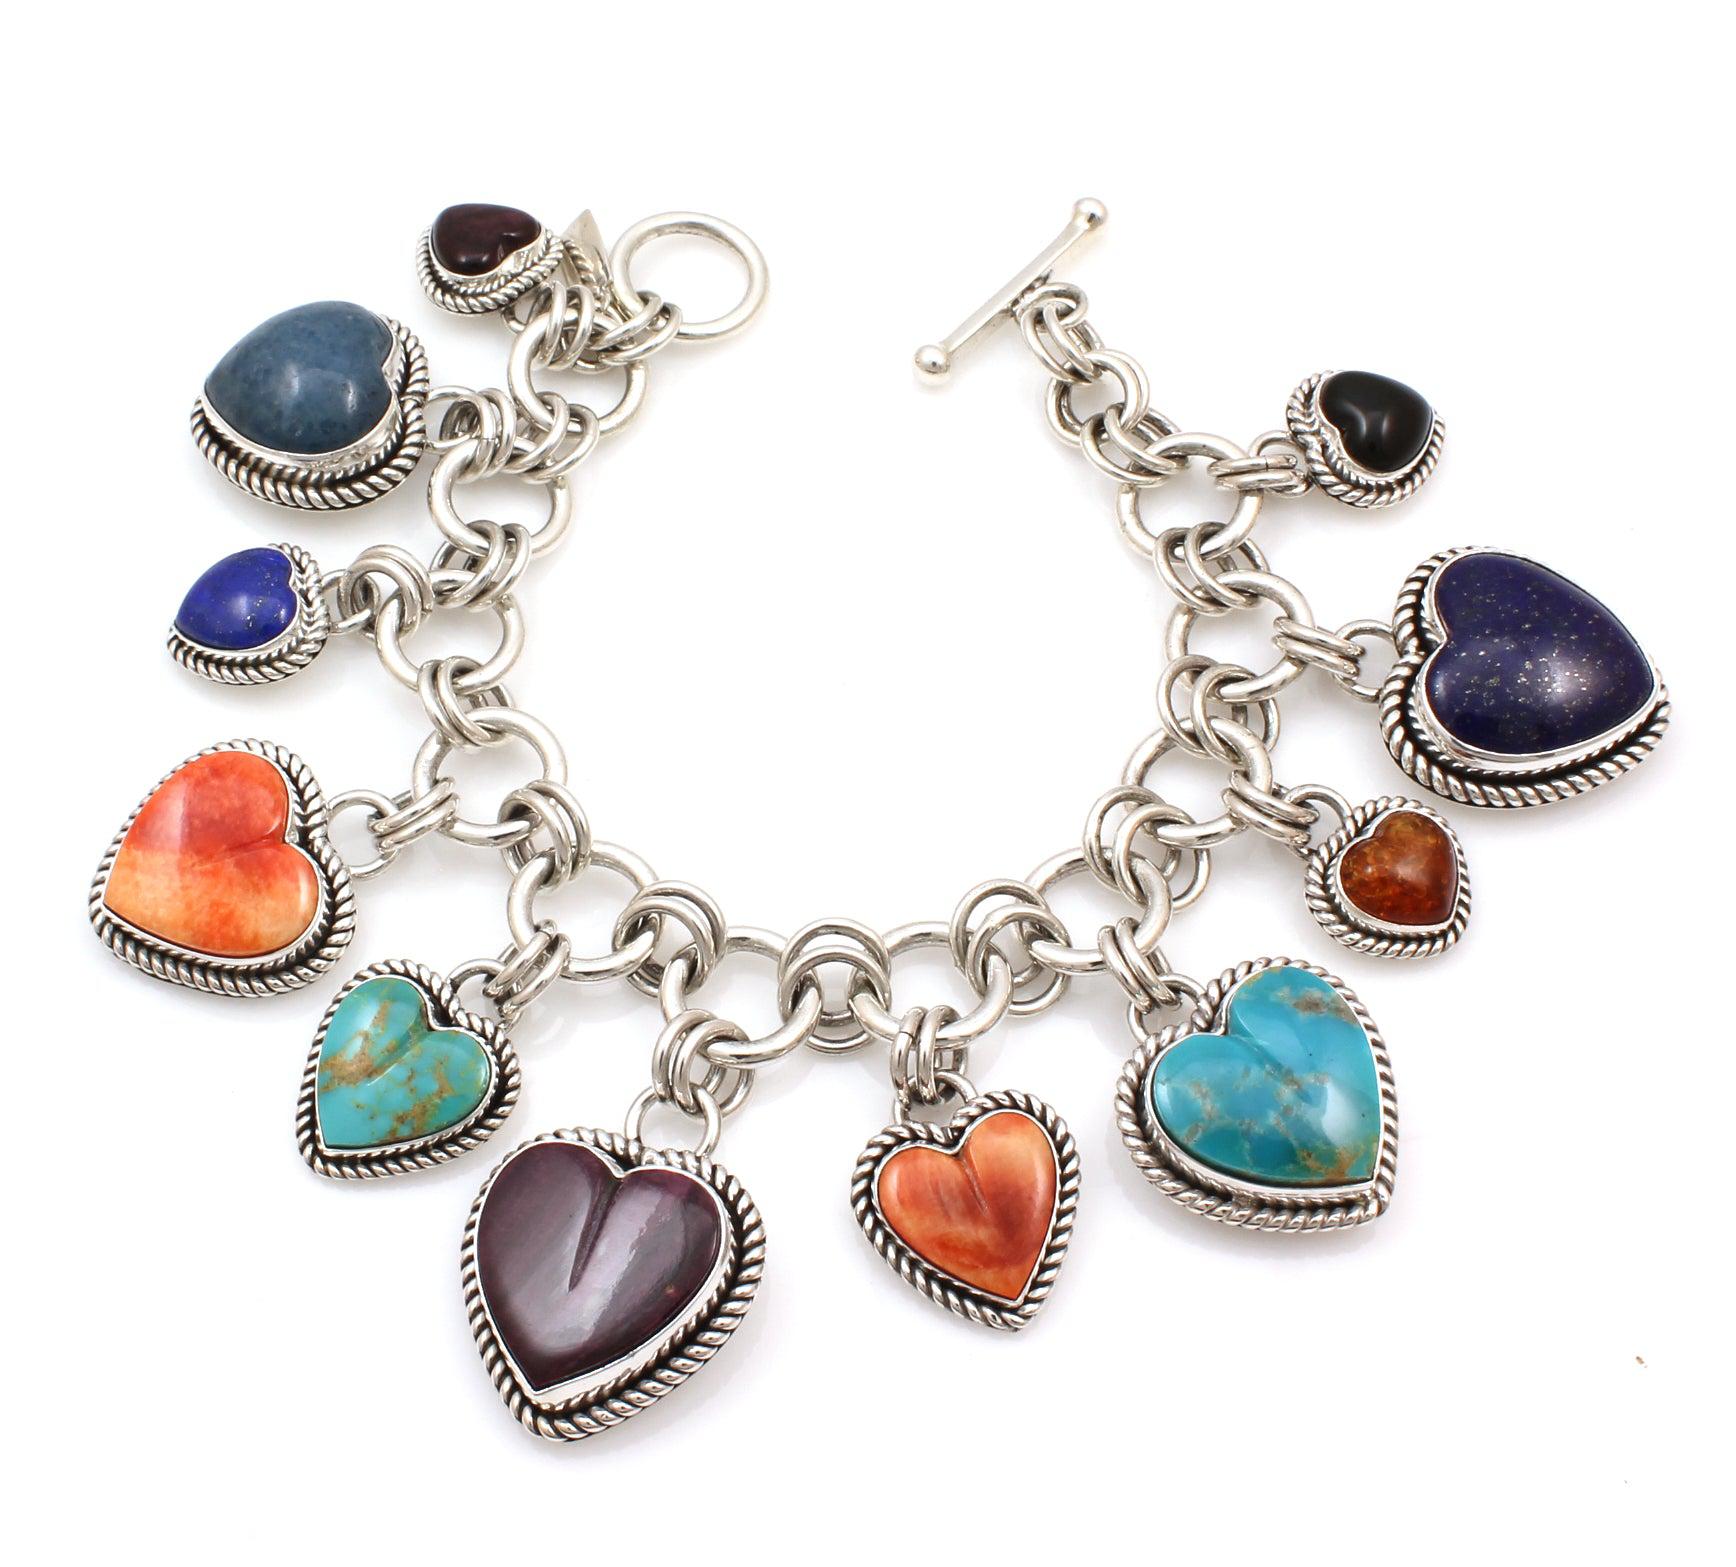 Heart Link Charm Bracelet in Sterling Silver